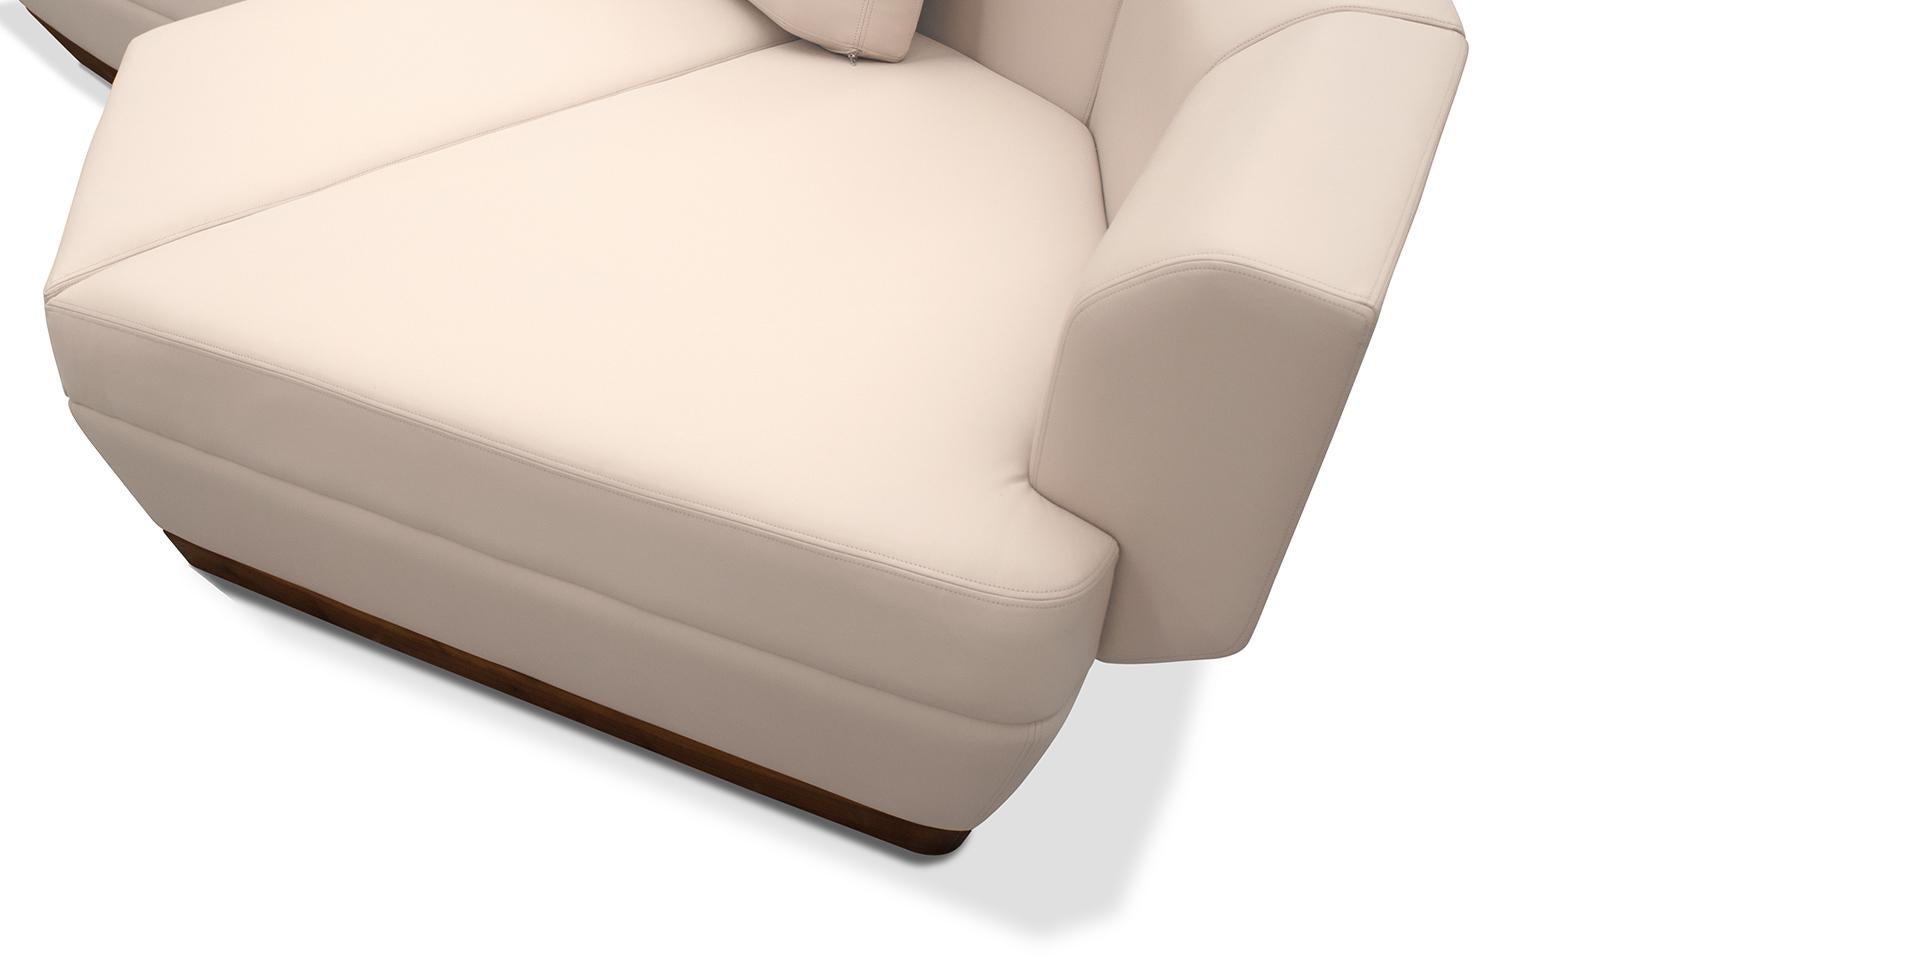 Ce canapé contemporain, très confortable, s'adaptera aux salons à l'orientation de style de décoration intérieure moderne.
Avec une vision de comprendre le passé et de l'interpréter à travers les couleurs, les matériaux et le design contemporain,